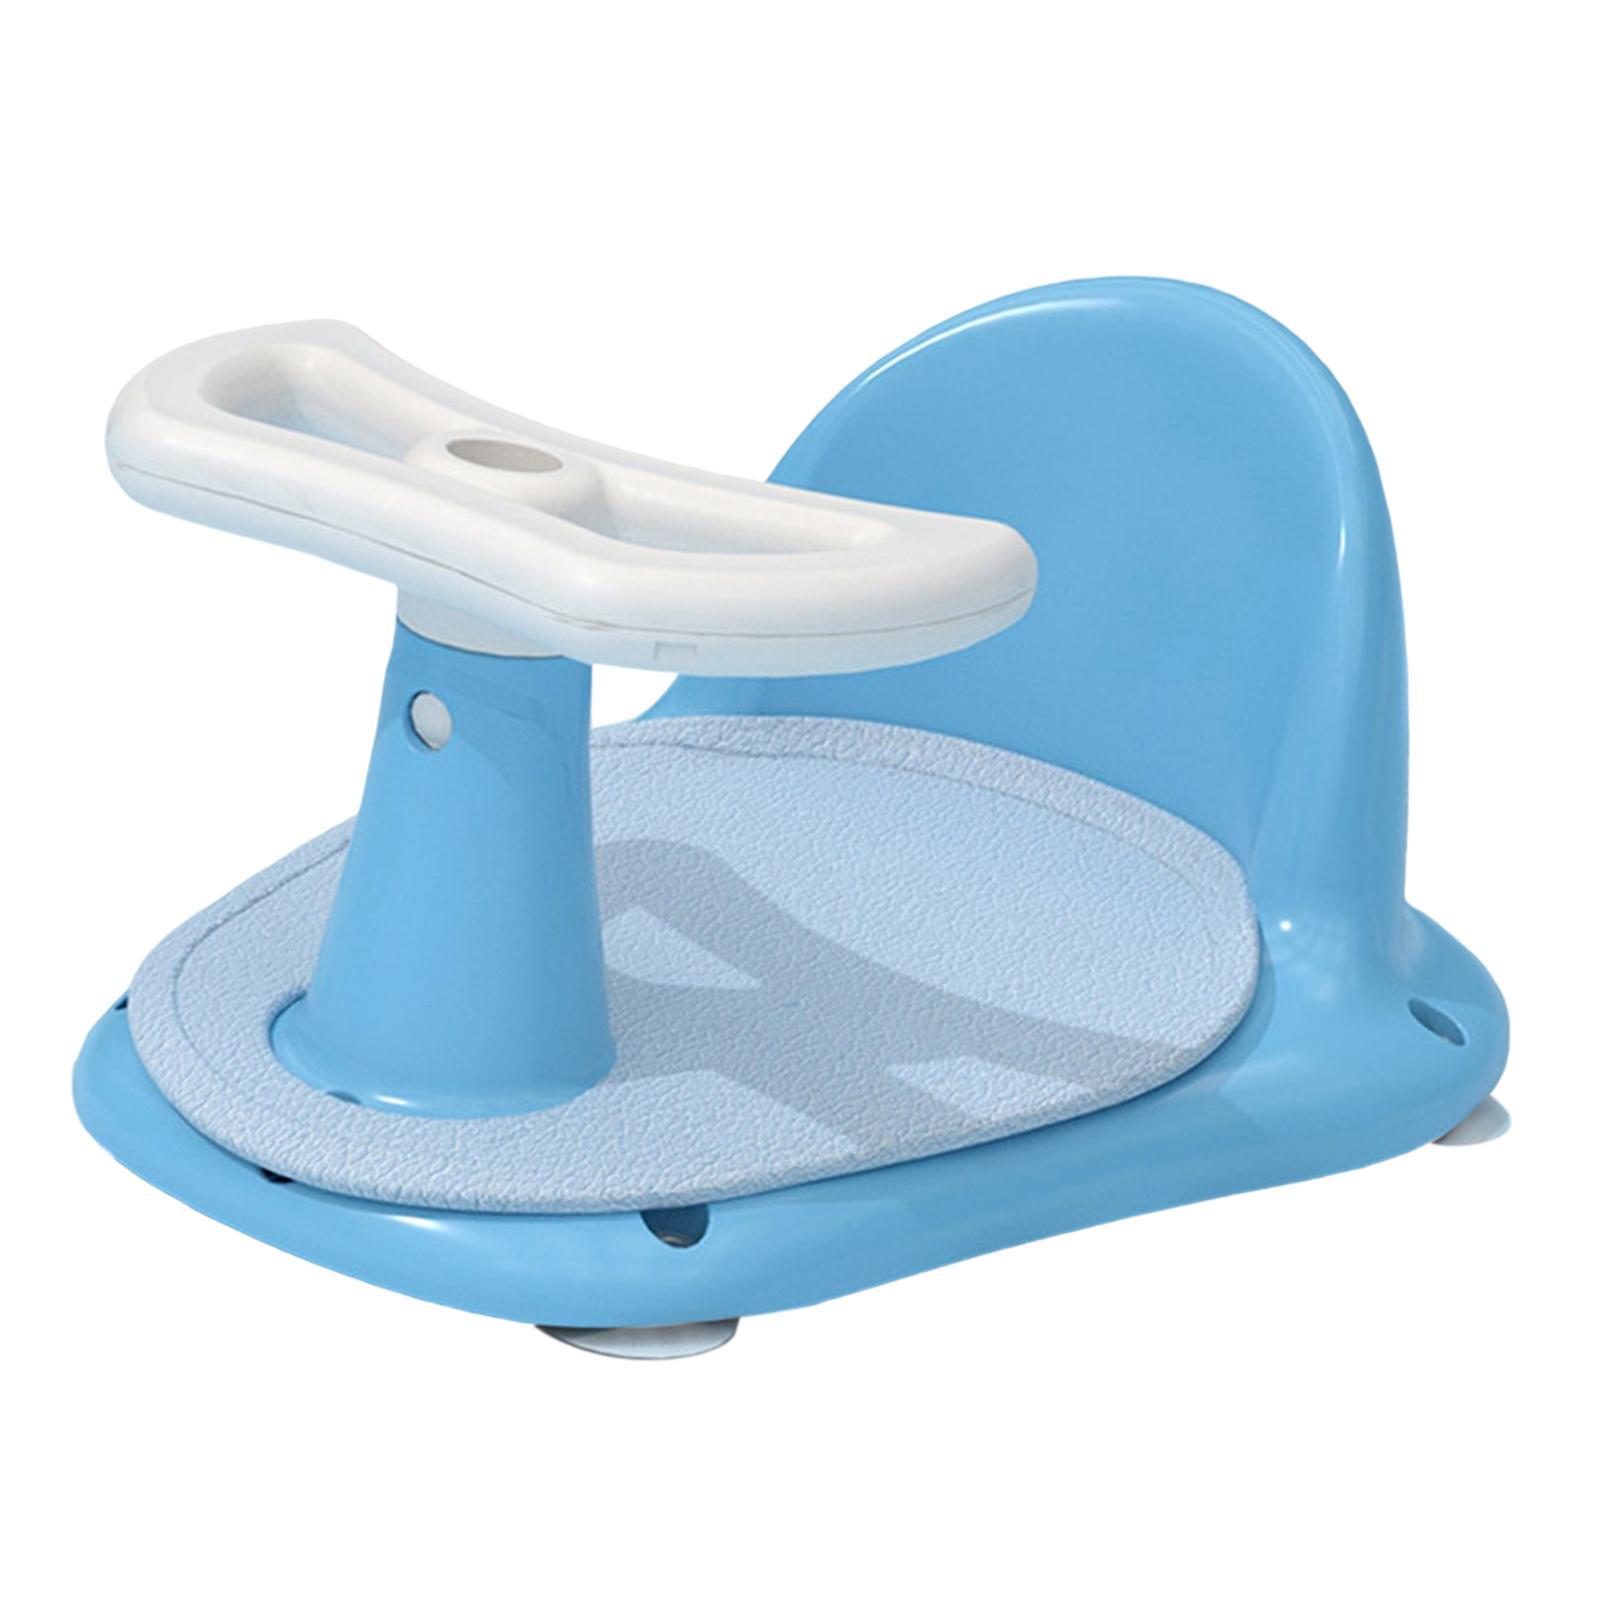 Infant Bath Tub Seat Bath Seat Support Bathtub Chair for Baby Boys and Girls